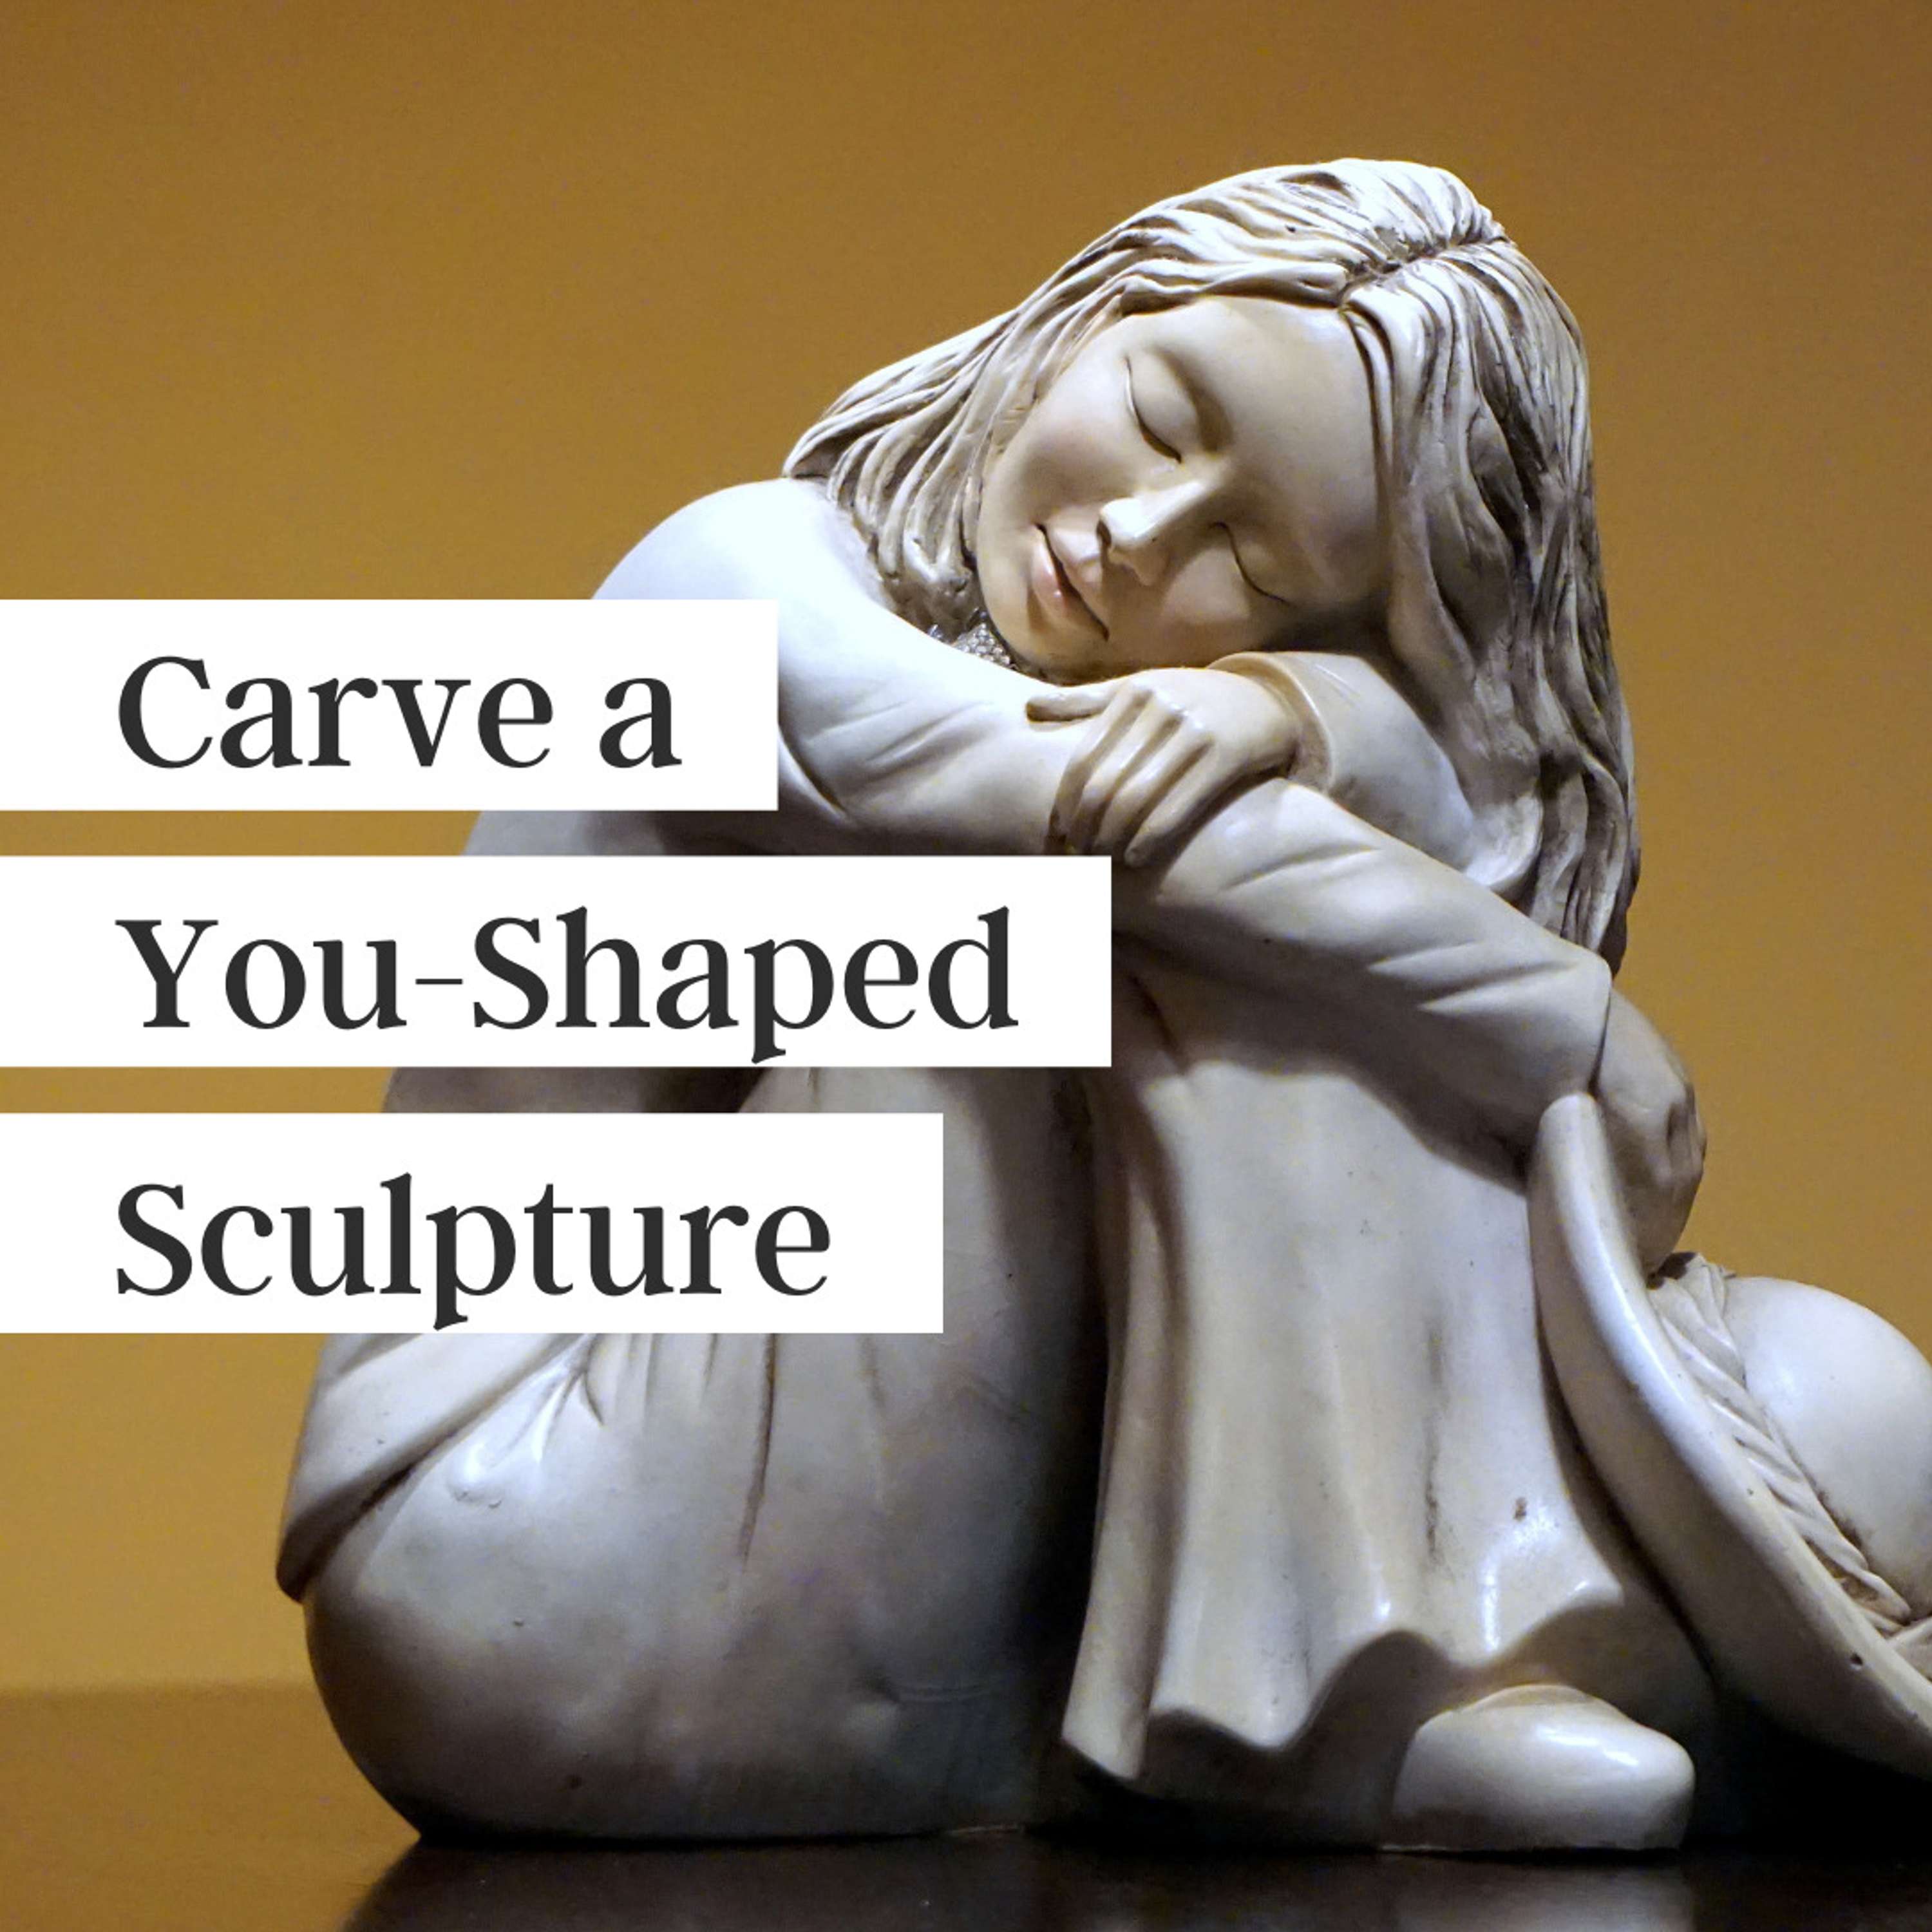 Carve a You-Shaped Sculpture